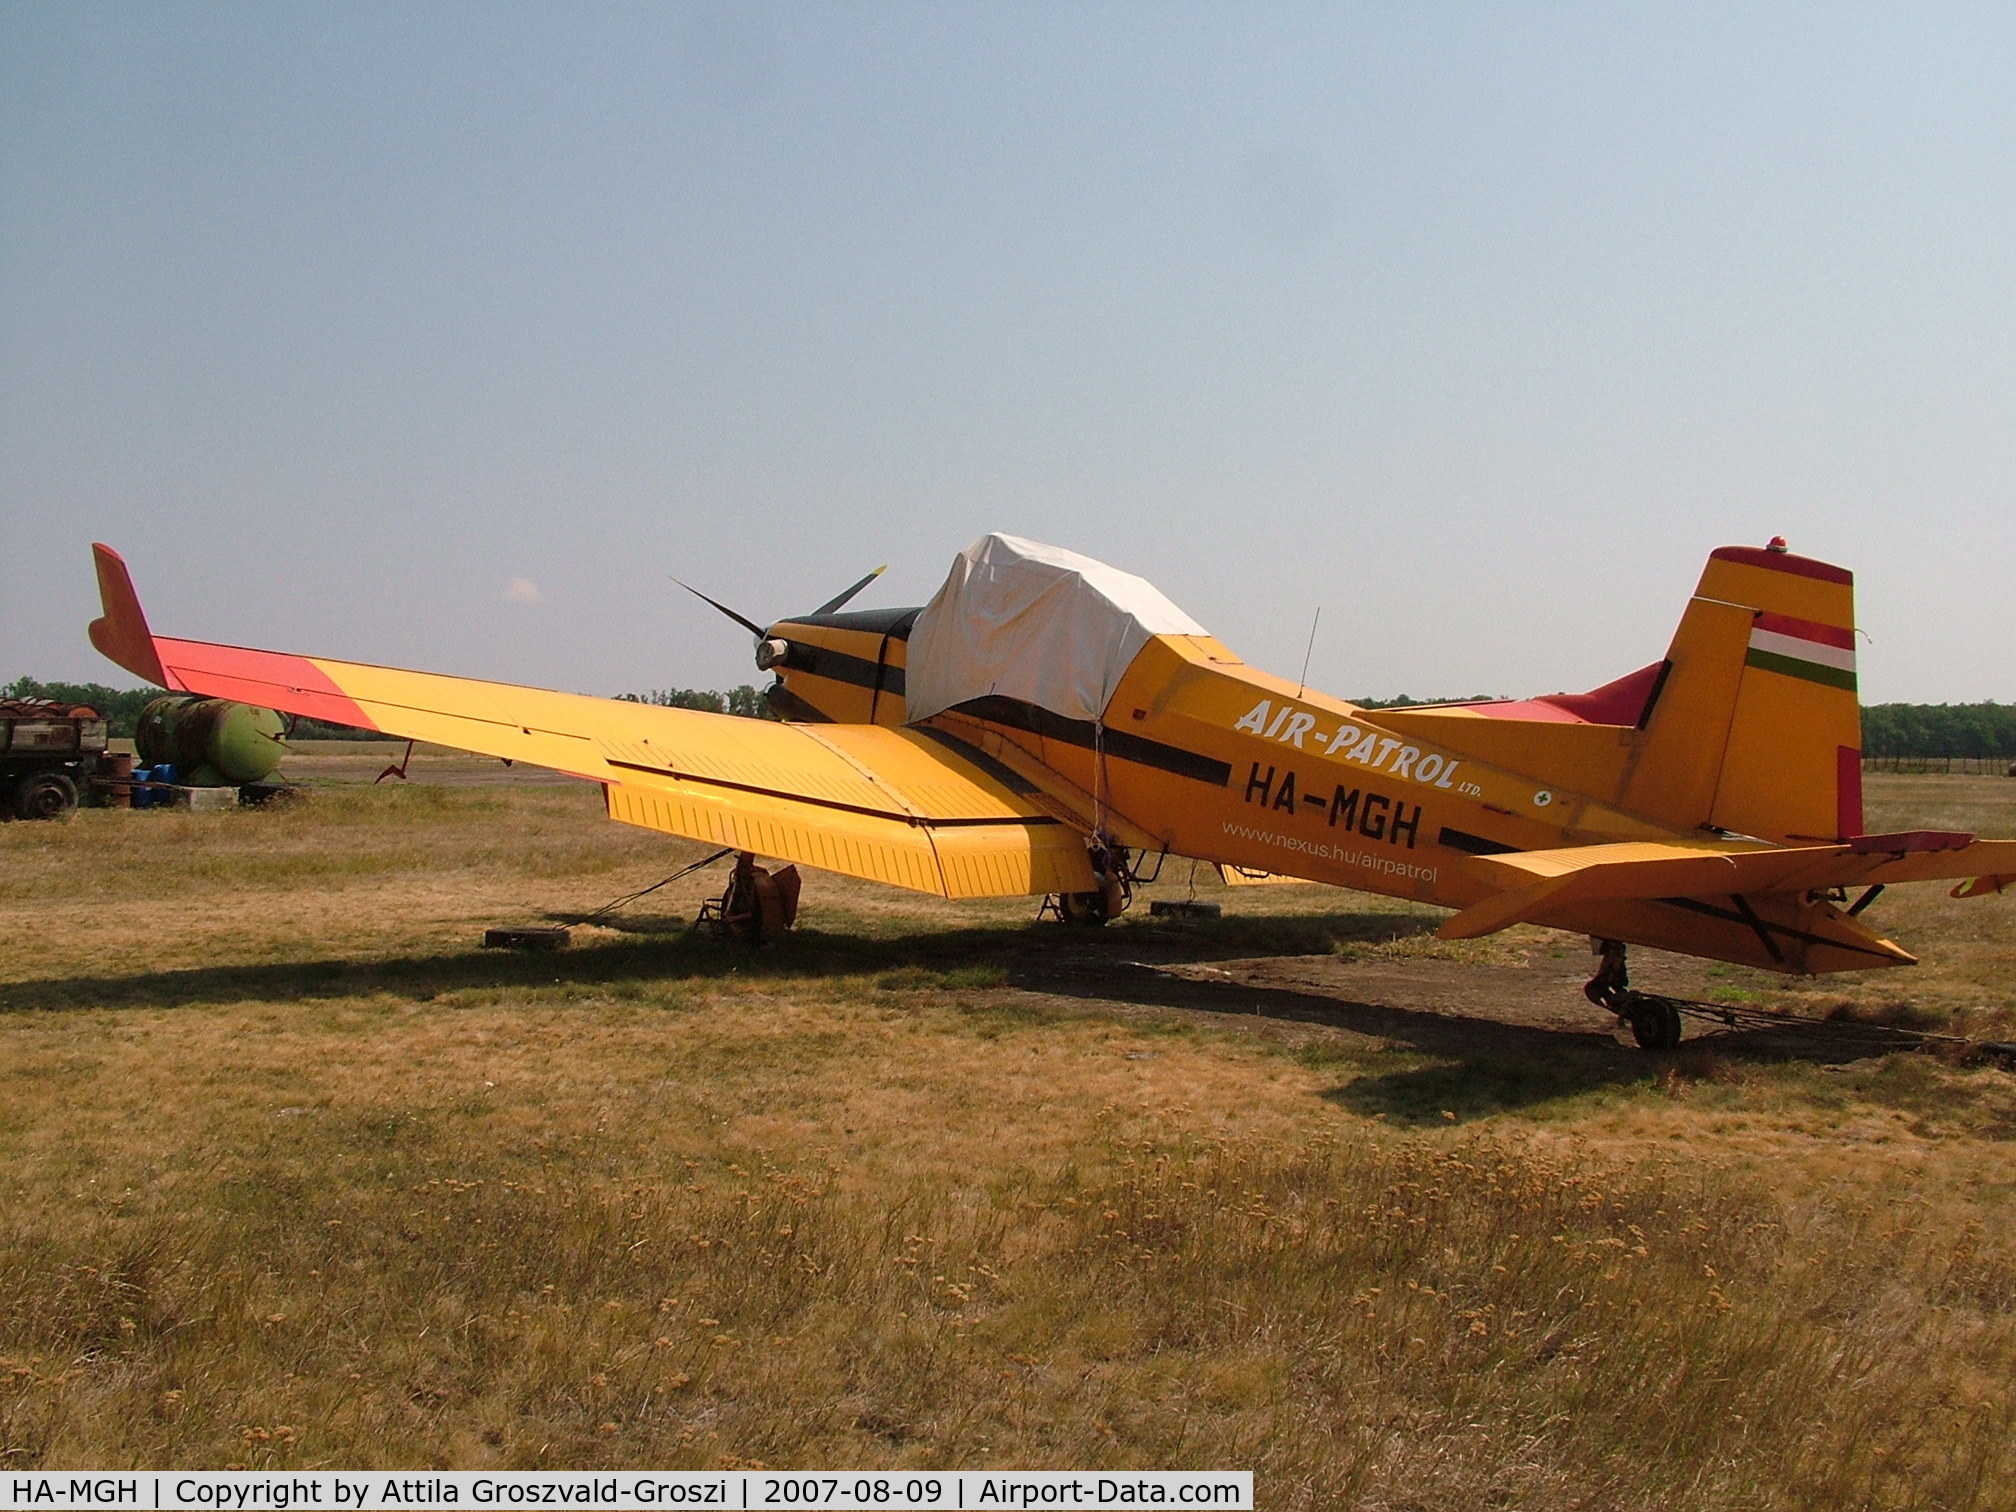 HA-MGH, 1989 Let Z-137T Agro-Turbo C/N 021, Kisújszállás, agricultural airfield.